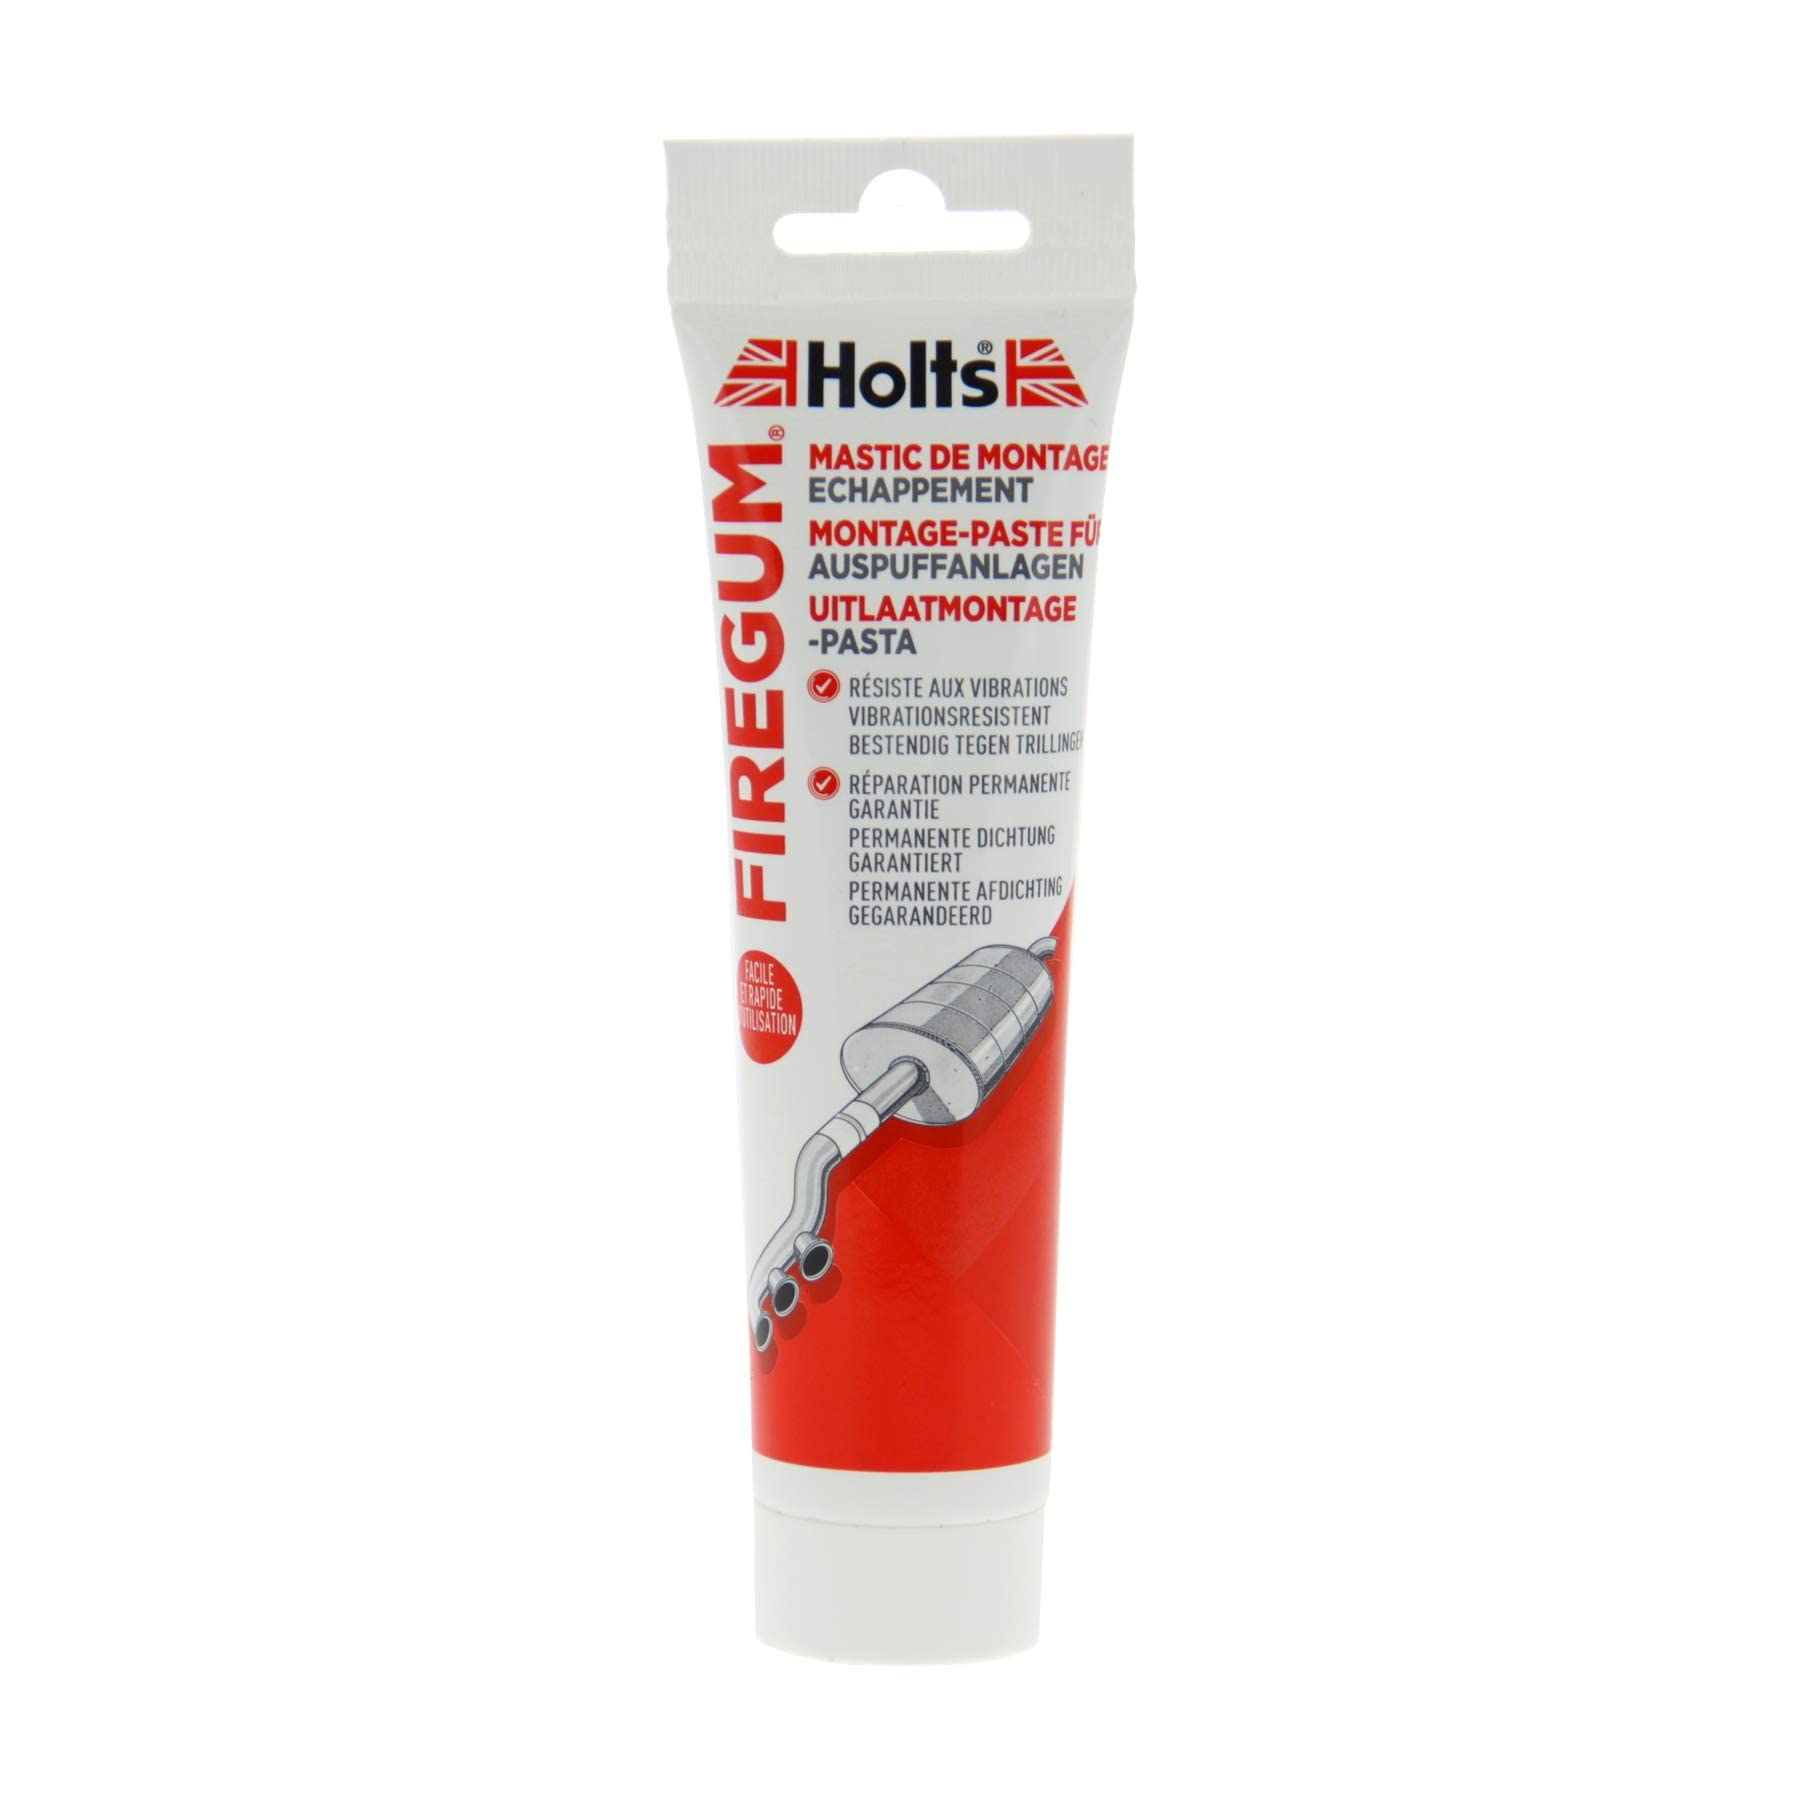 Holts Firegum Montage-Paste für Auspuffanlagen,tube, 150gr von Holts